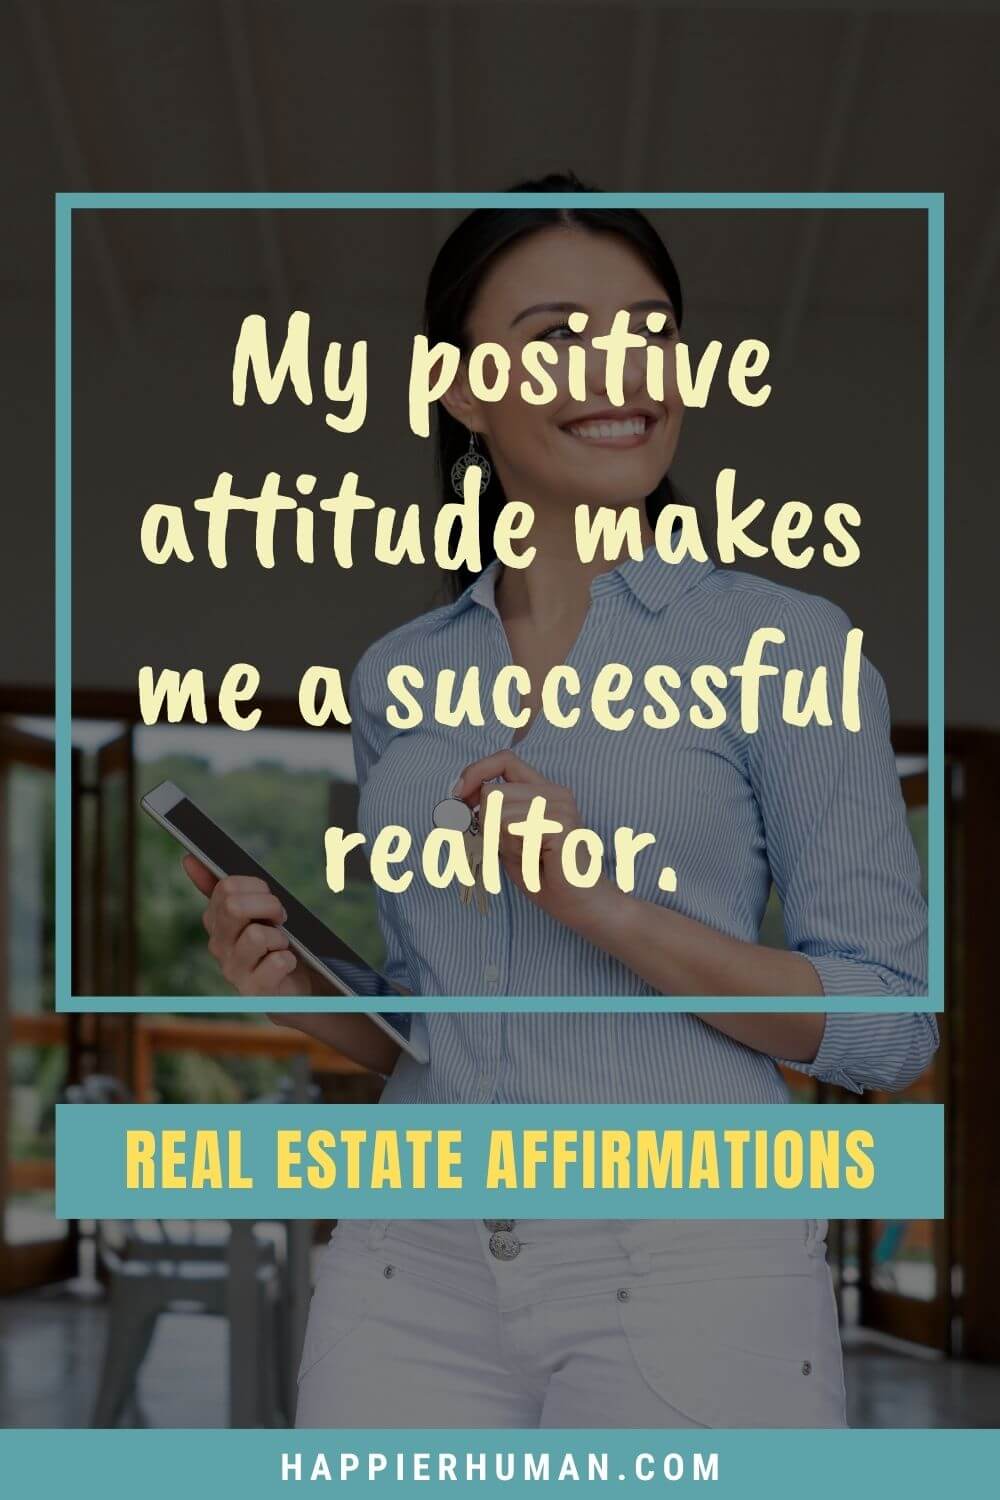 Аффирмации для недвижимости - У меня репутация успешного агента по недвижимости.